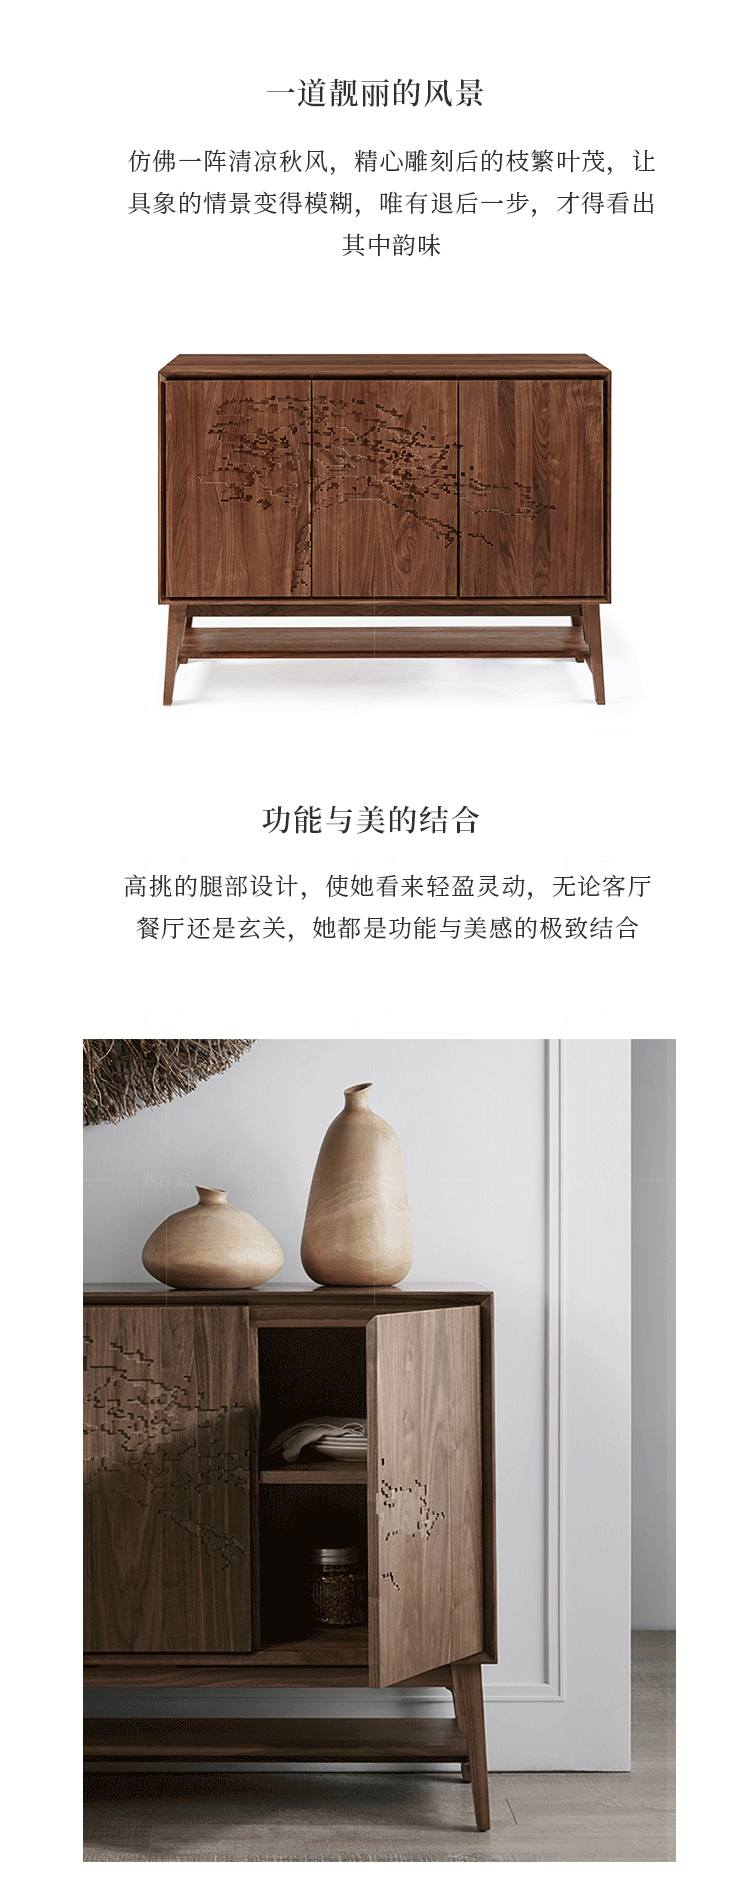 新中式风格窗外边柜的家具详细介绍